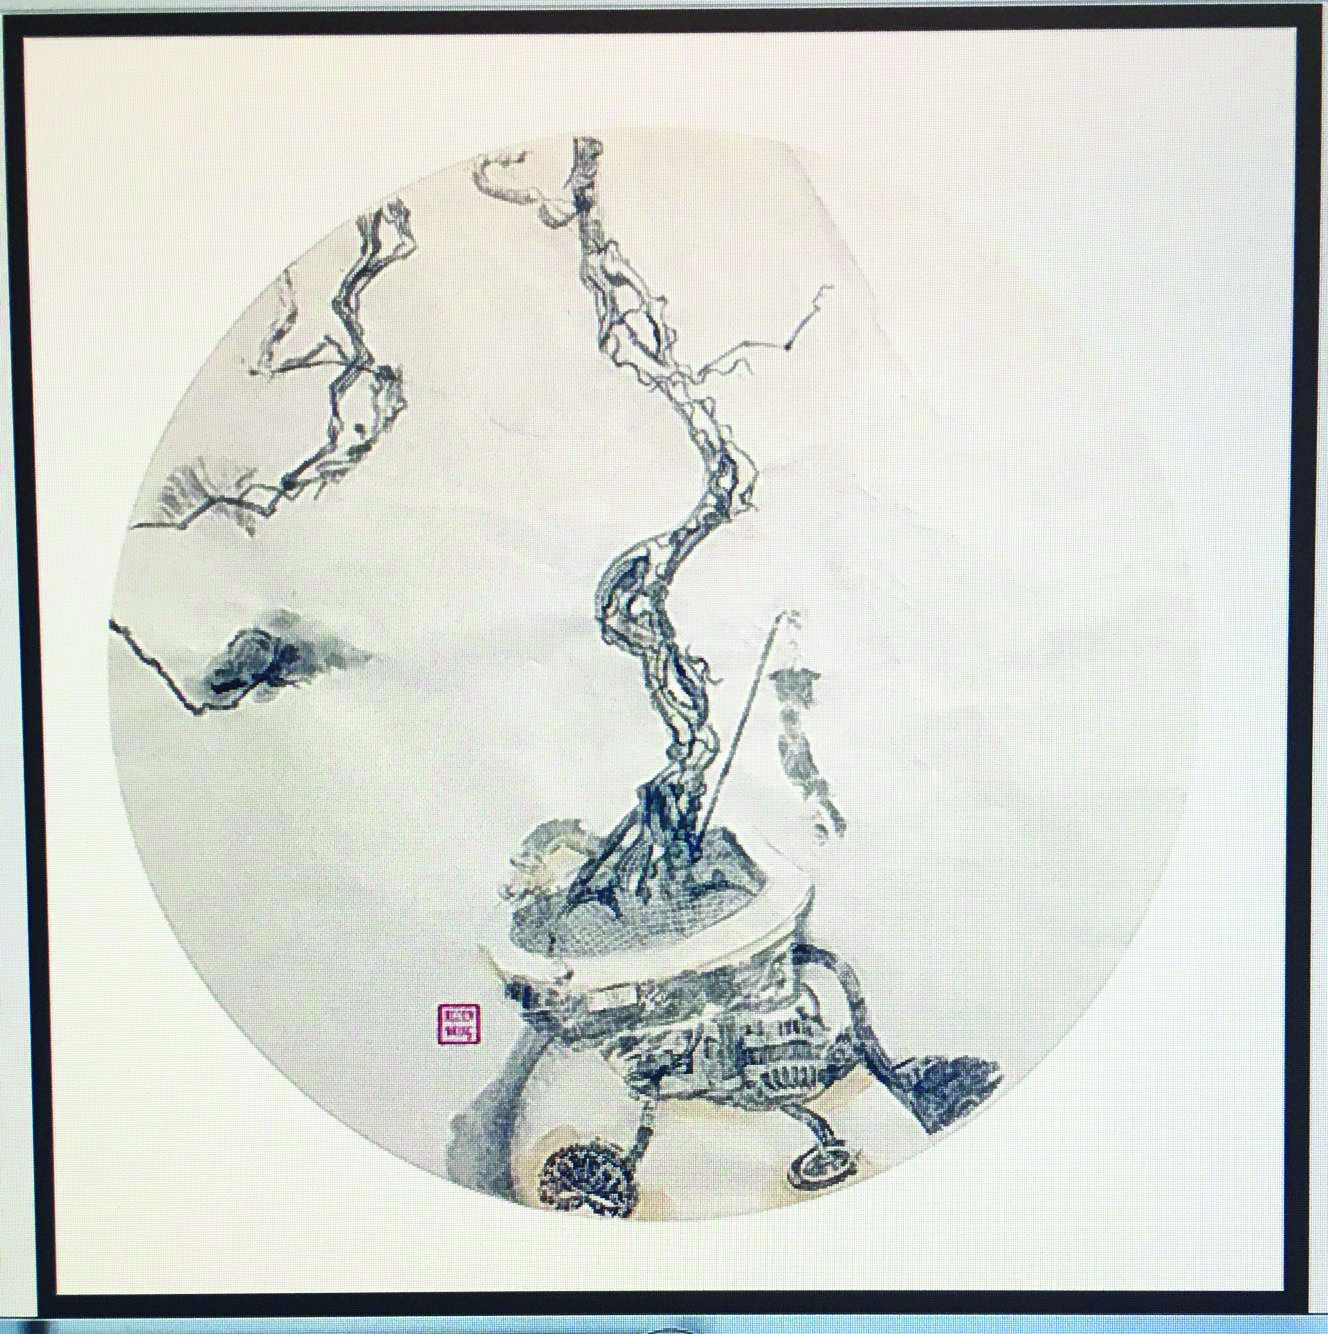 “Reencarnação” de Allen Wong inaugura dia 10 no espaço Creative Macau